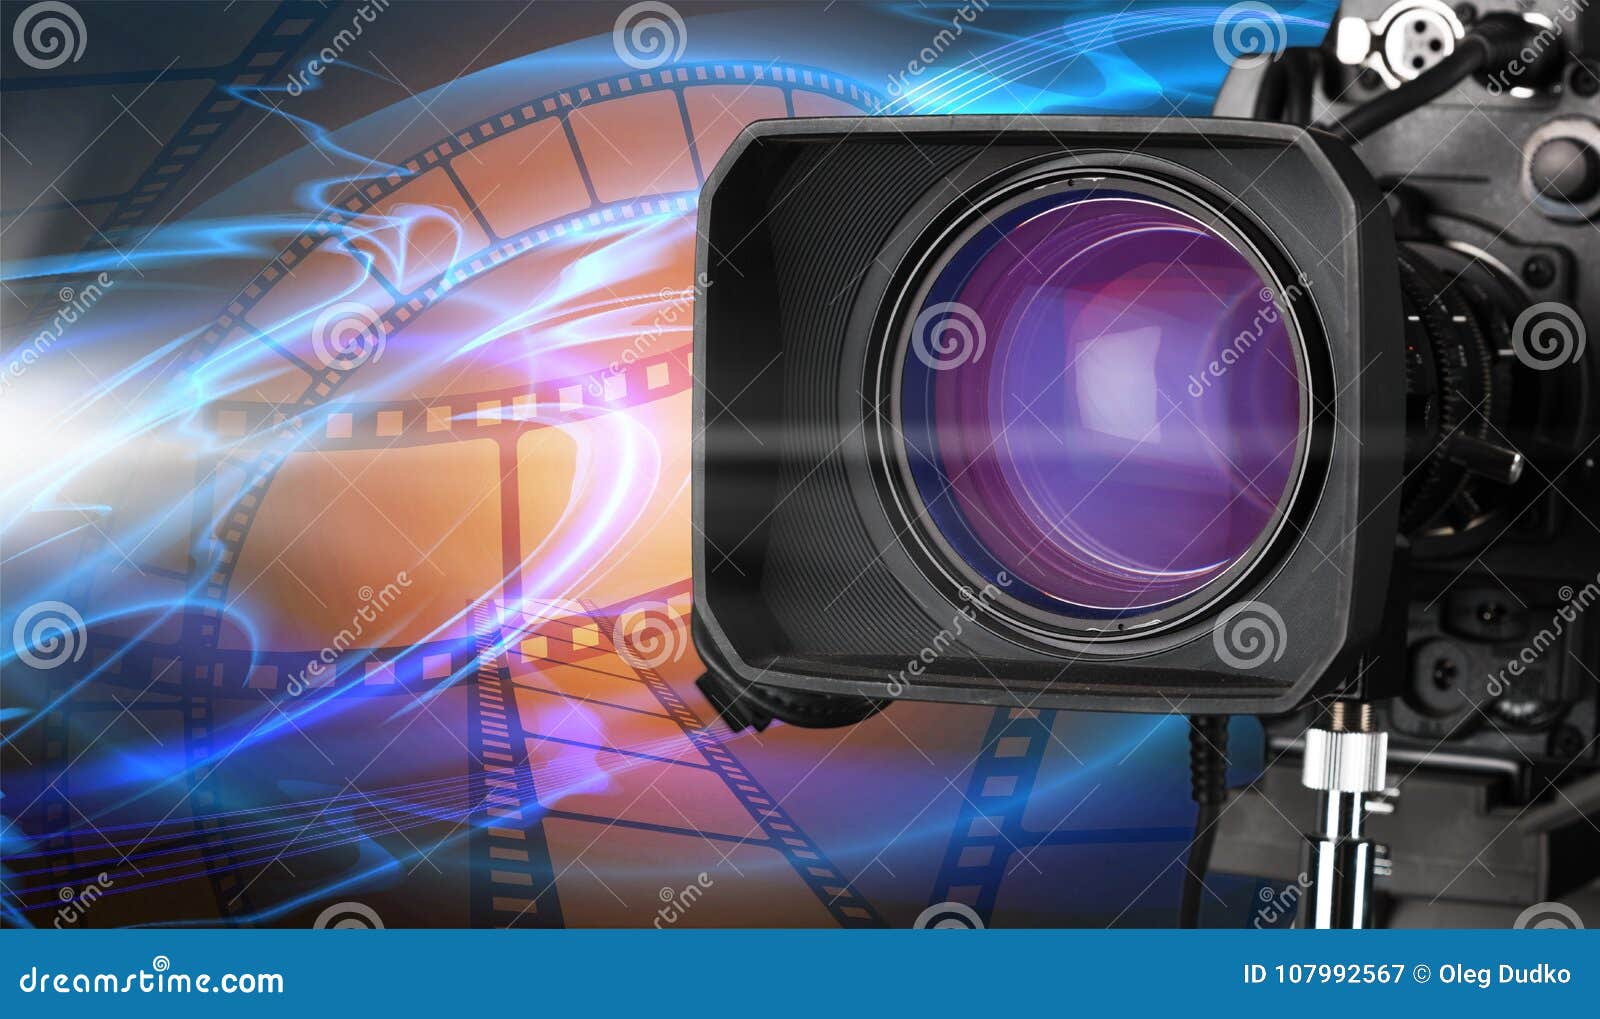 Máy quay phim chuyên nghiệp trên nền hình minh họa cho phép bạn ghi lại những cảnh quay tuyệt đẹp, đầy màu sắc và sinh động. Hãy theo chúng tôi đến với những hình ảnh được quay bằng chiếc máy quay phim chuyên nghiệp này.